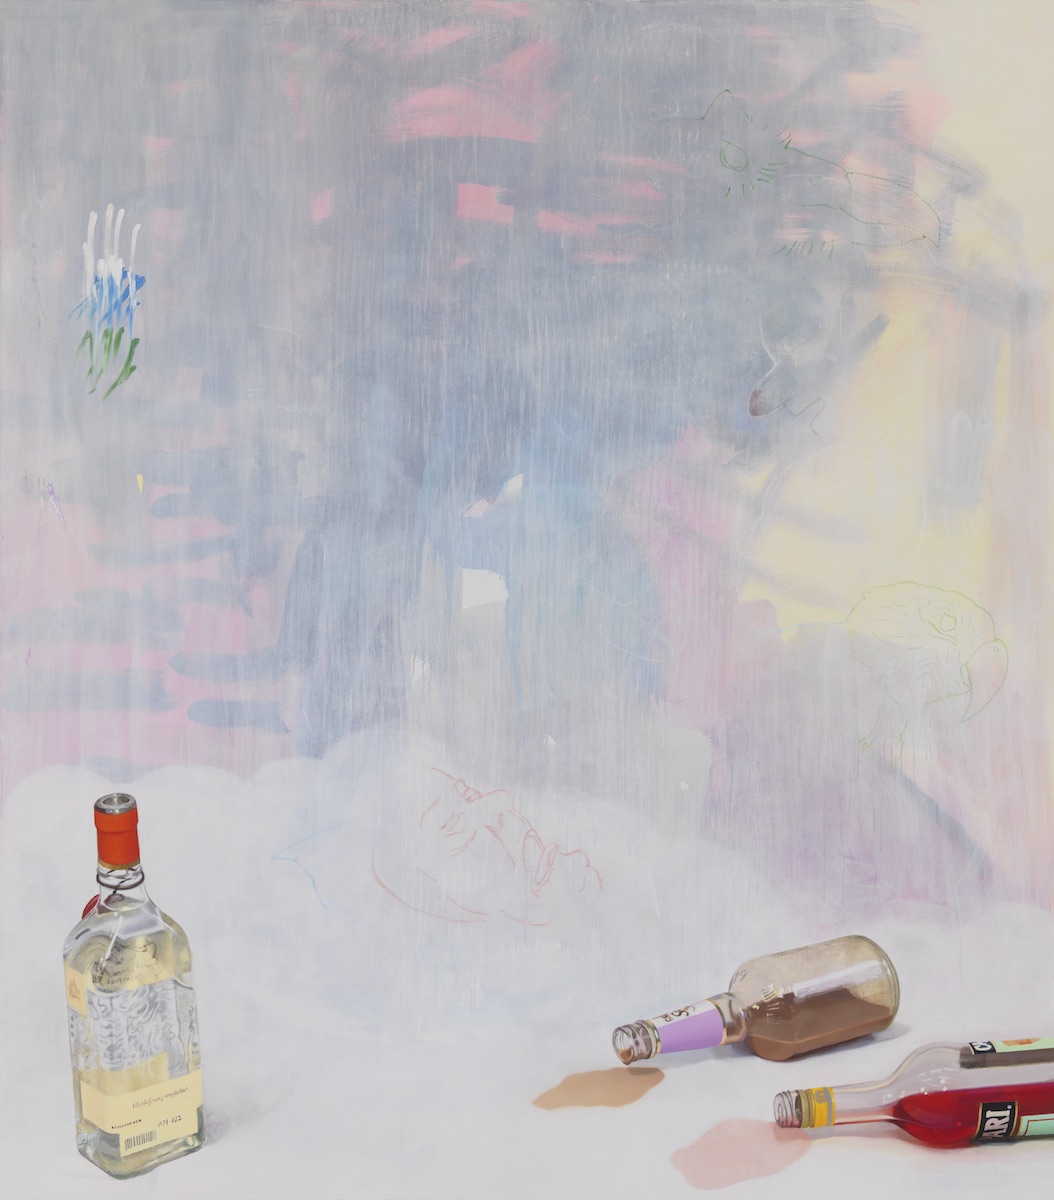 Monika Baer, Überlieferung verpflichtet, 2014, acrylic and oil on canvas, 98 3/8 × 86 5/8".